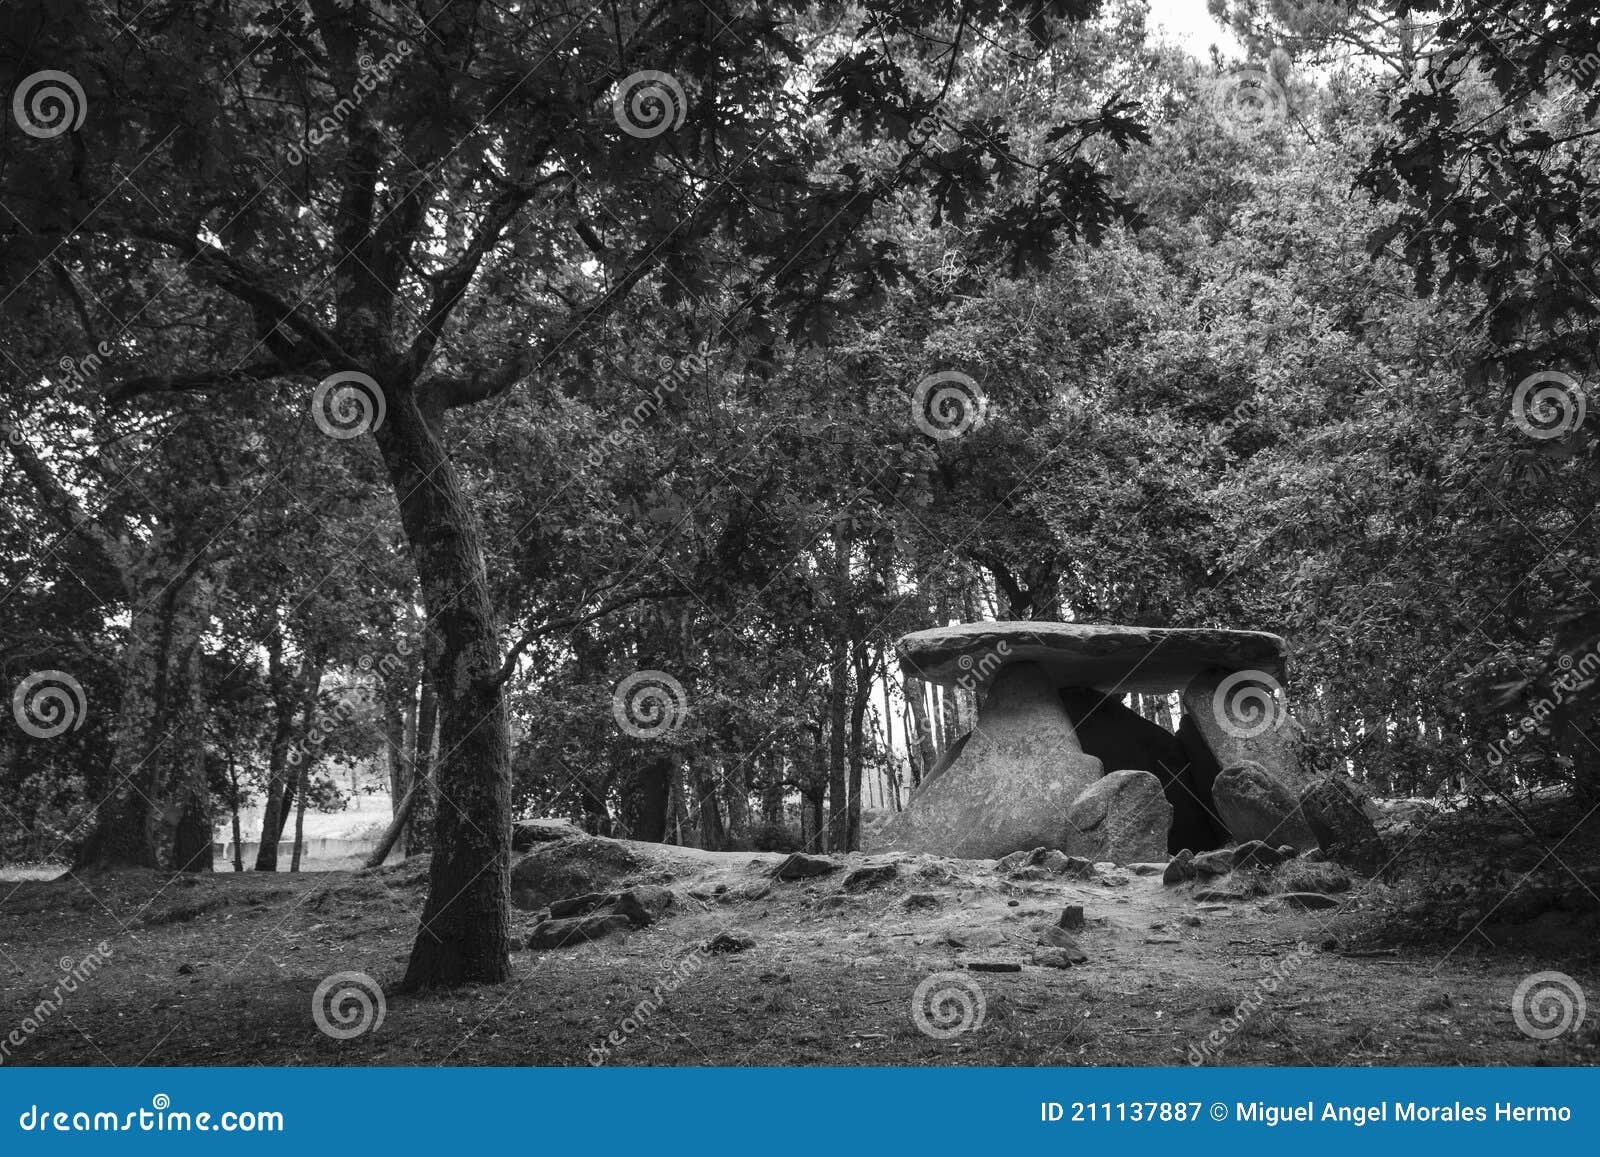 axeitos dolmen, a prehistoric megalithic construction located in the oleiros parish, riveira municipality, in the ria de arousa,